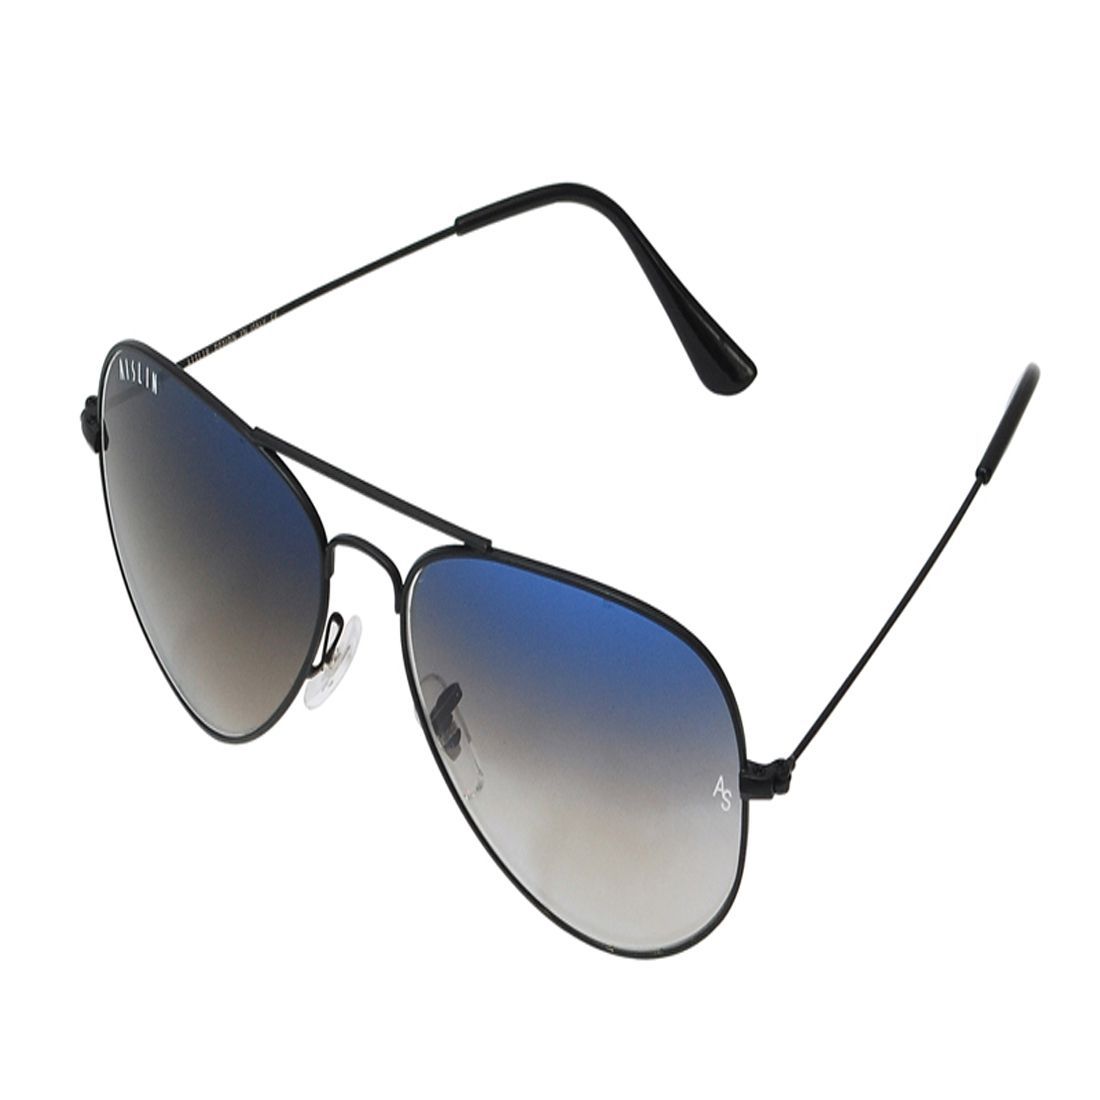 Aislin - Blue Pilot Sunglasses ( AS-3026-PR-Gun ) - Buy Aislin - Blue ...